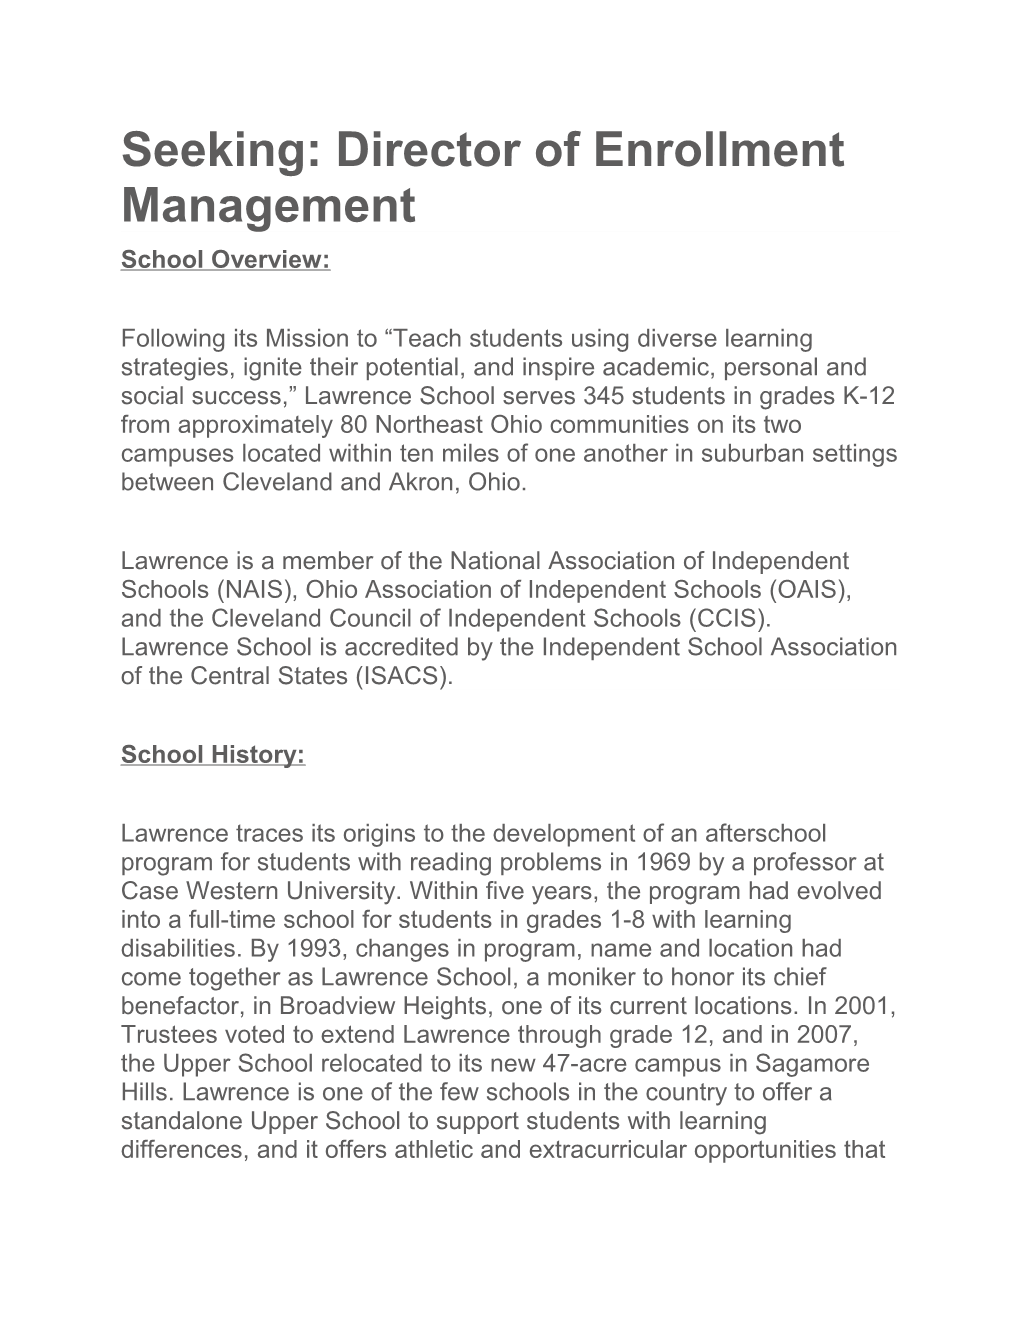 Seeking: Director of Enrollment Management